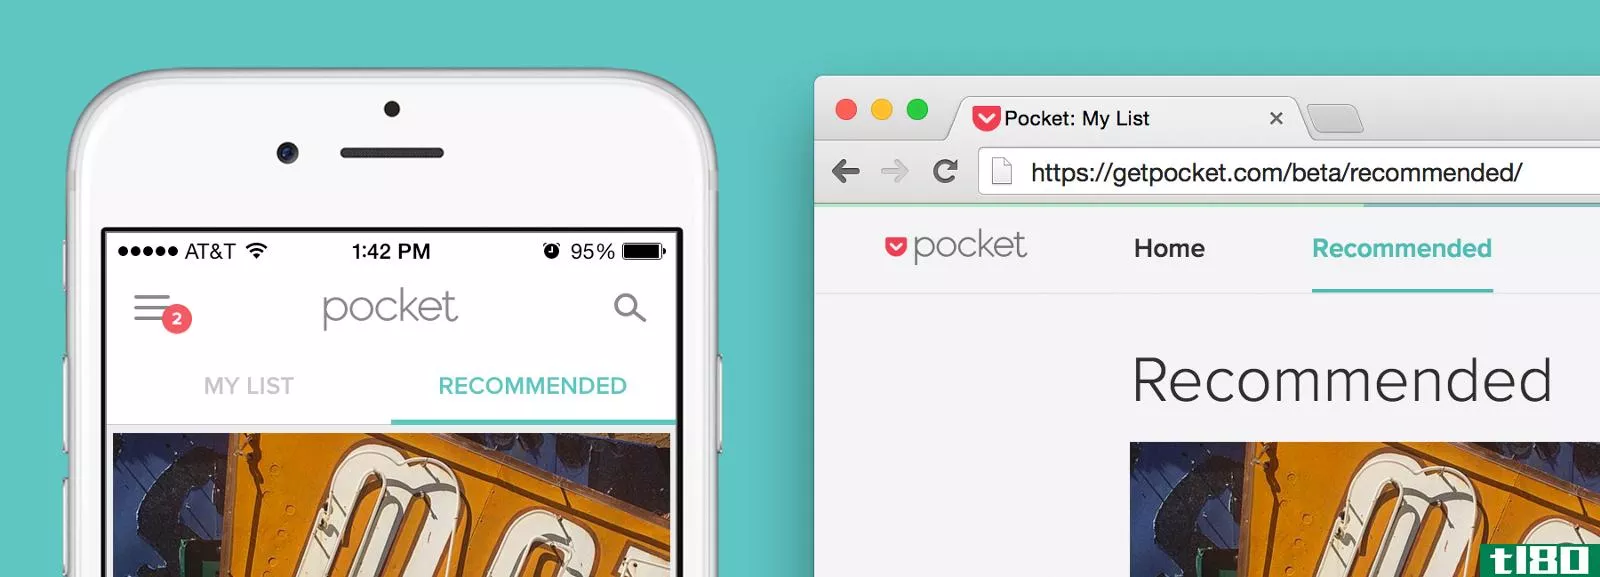 pocket开始在新的公测版中推荐文章和视频